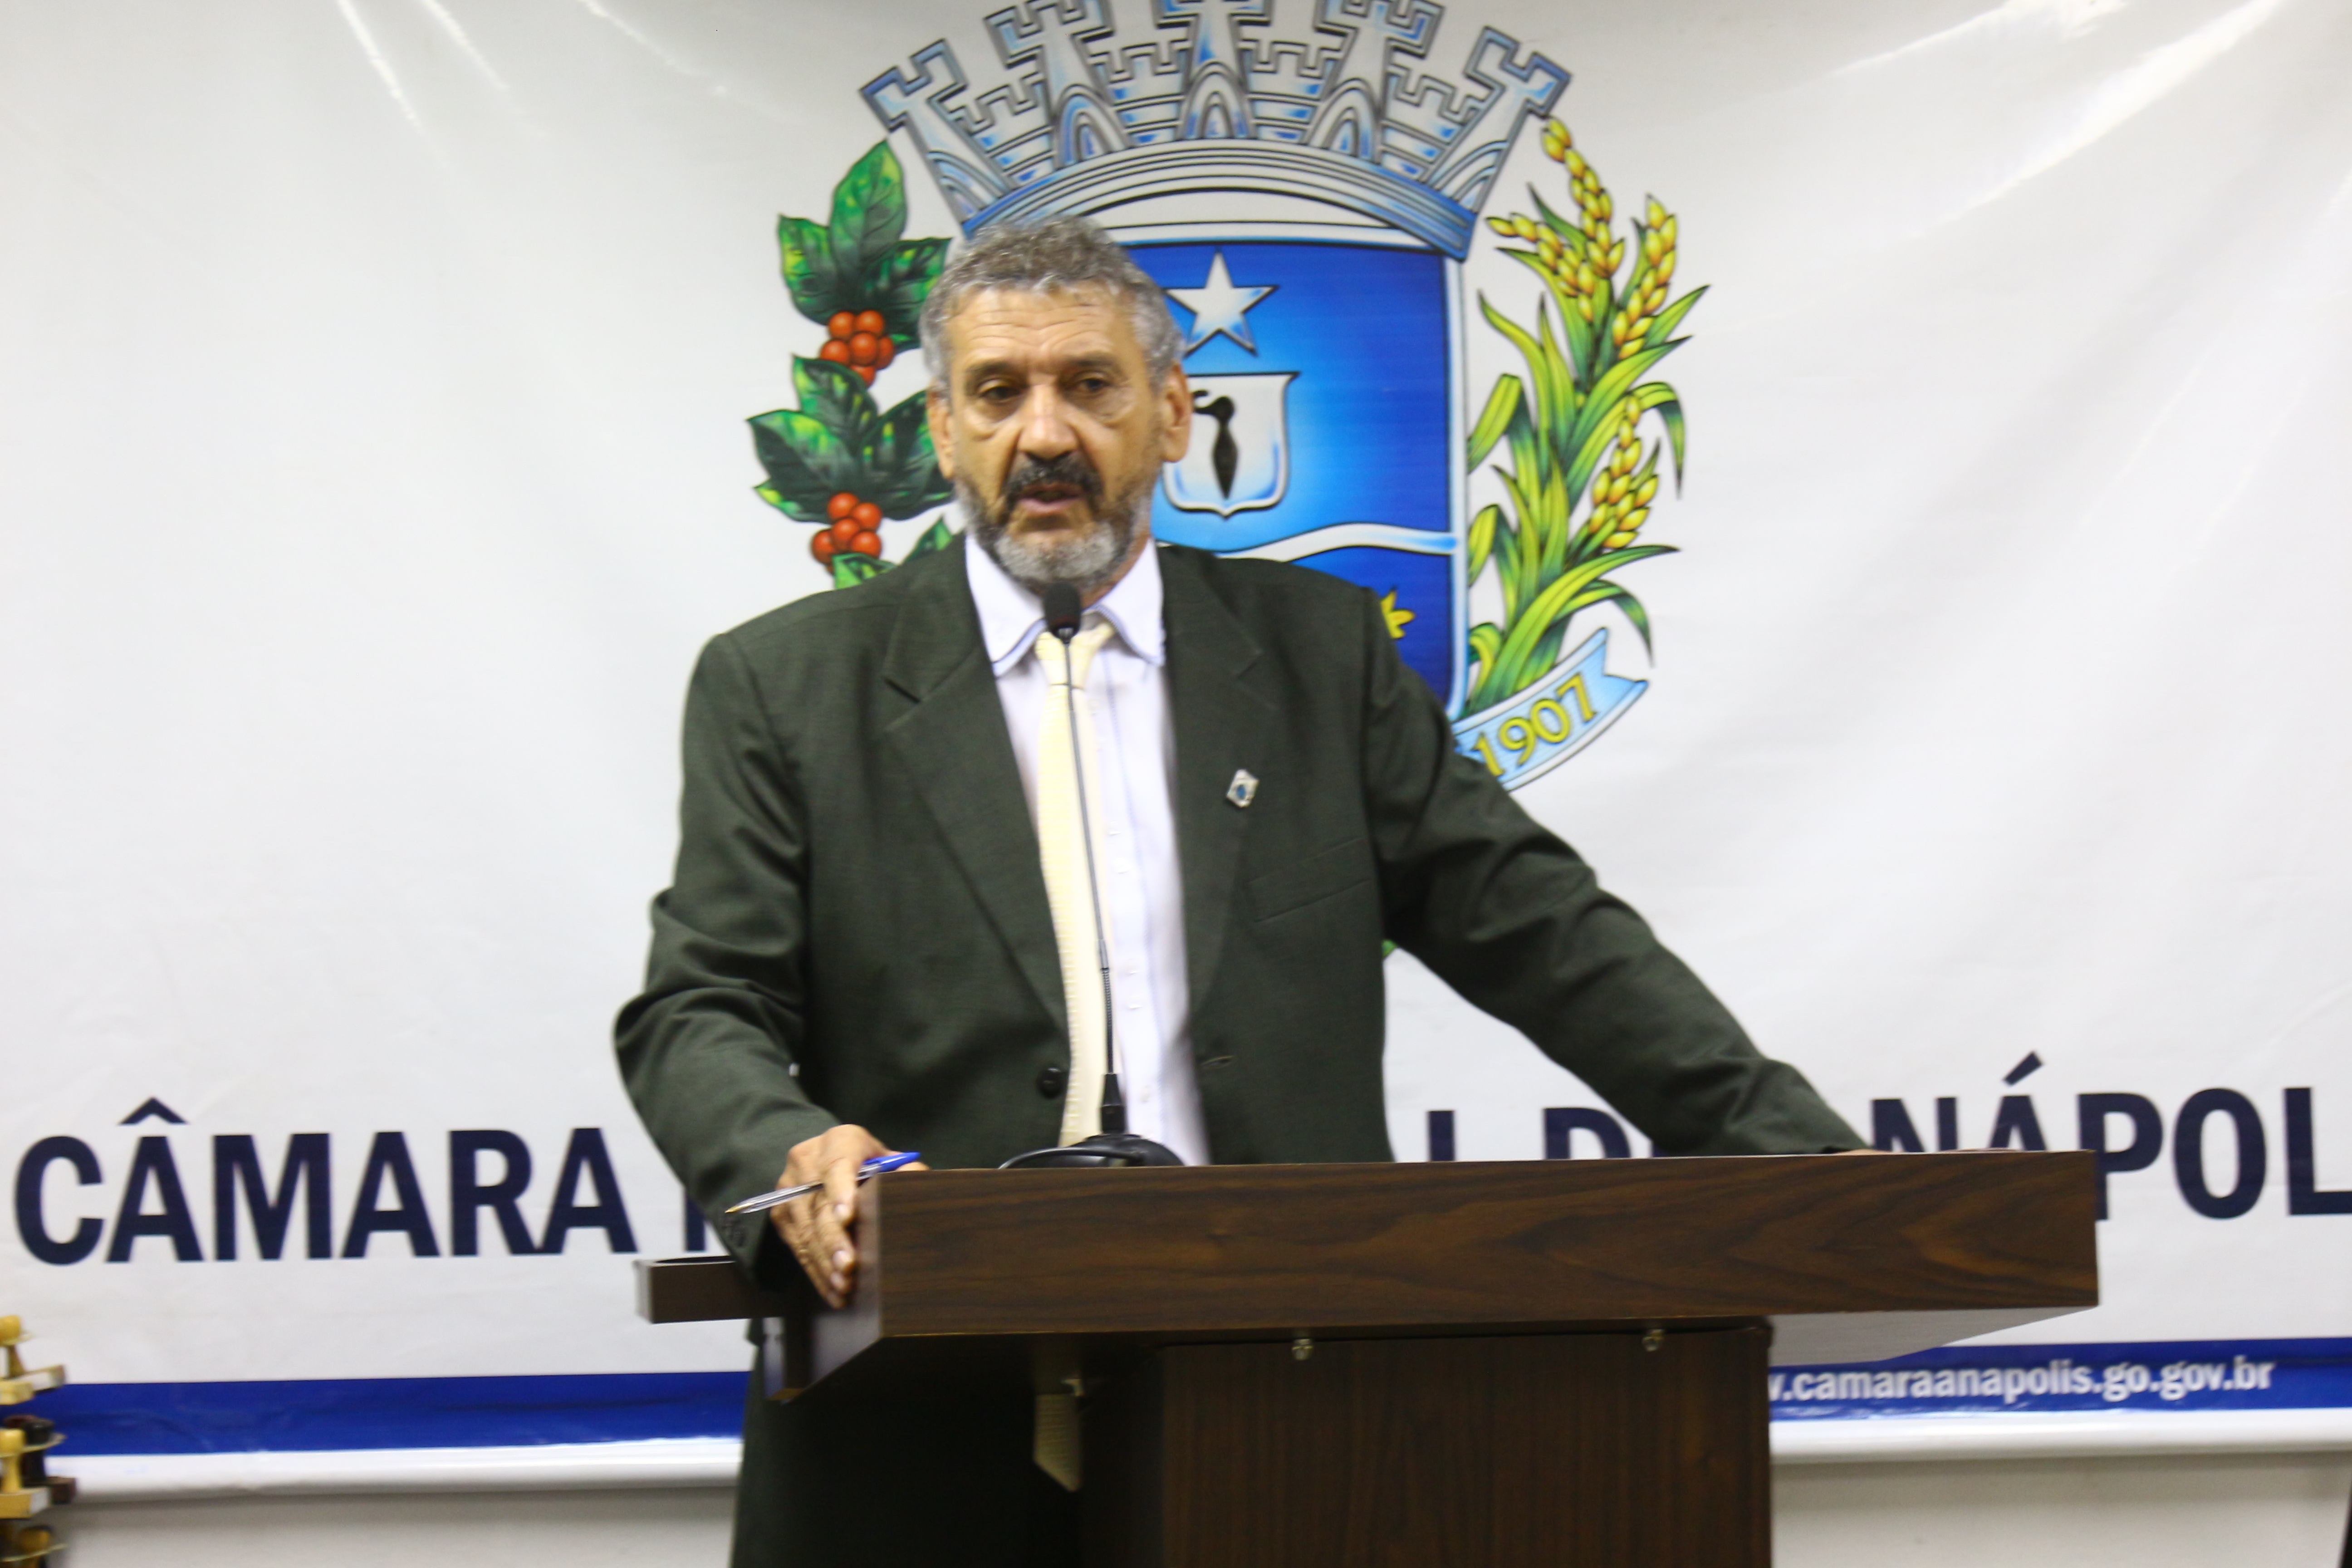 Mauro critica tentativa em Brasília de anistia ao caixa 2